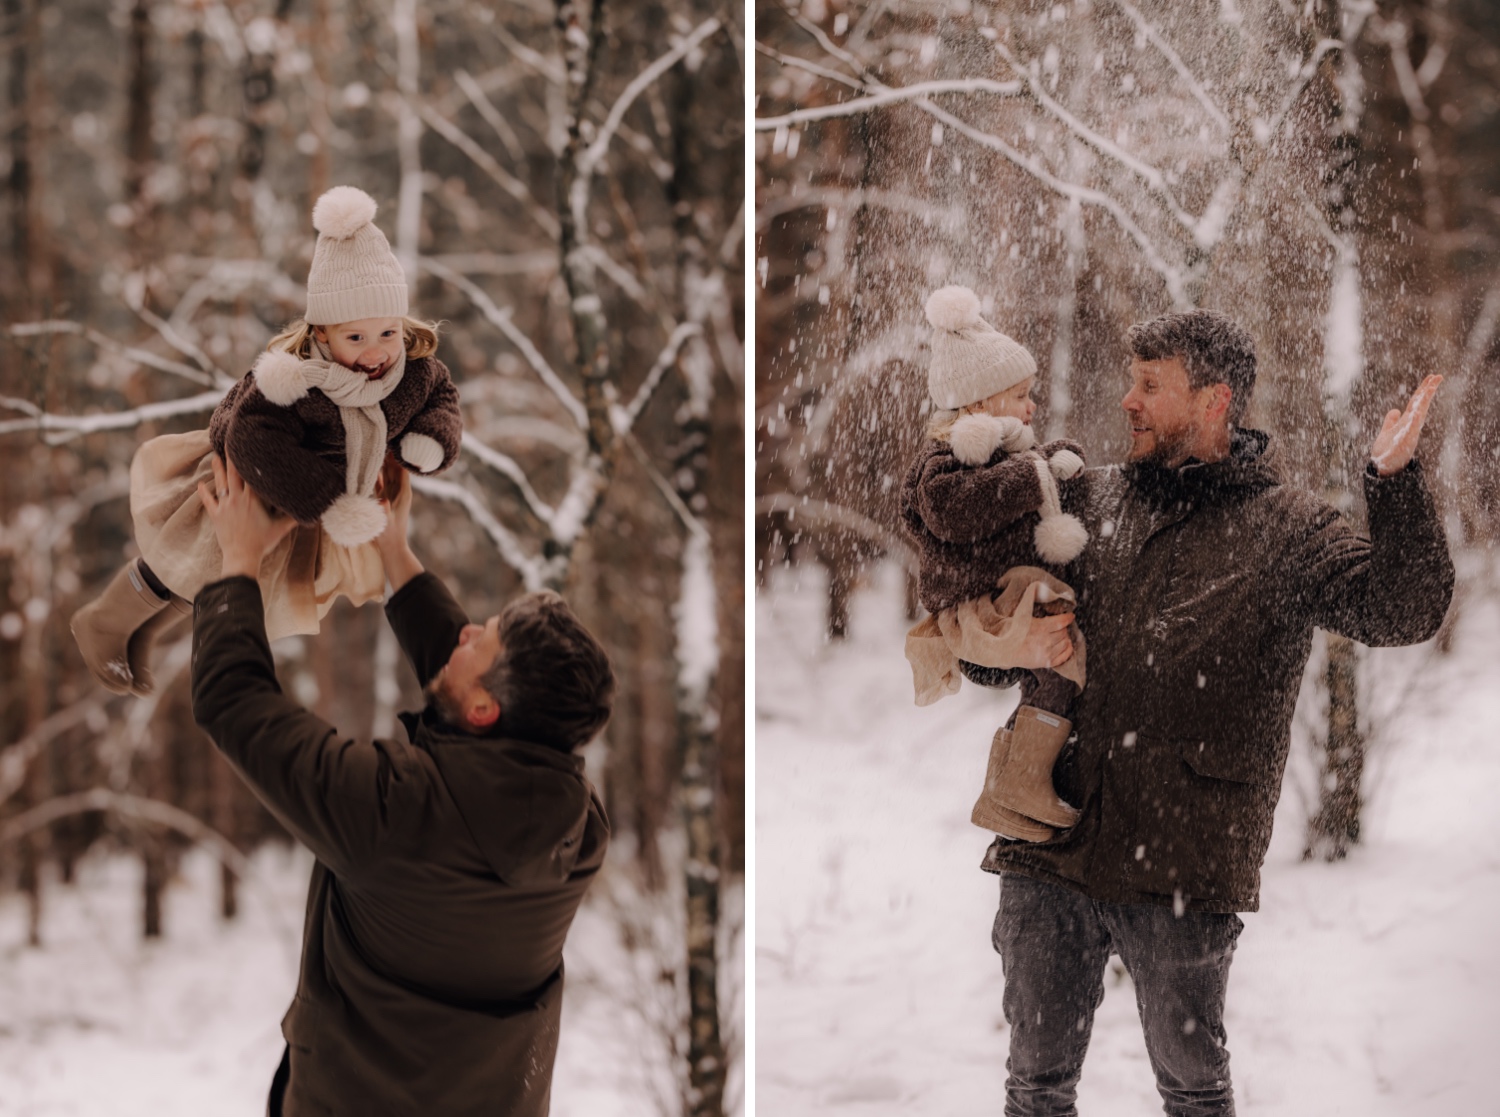 sneeuw valt op vader en dochtertje